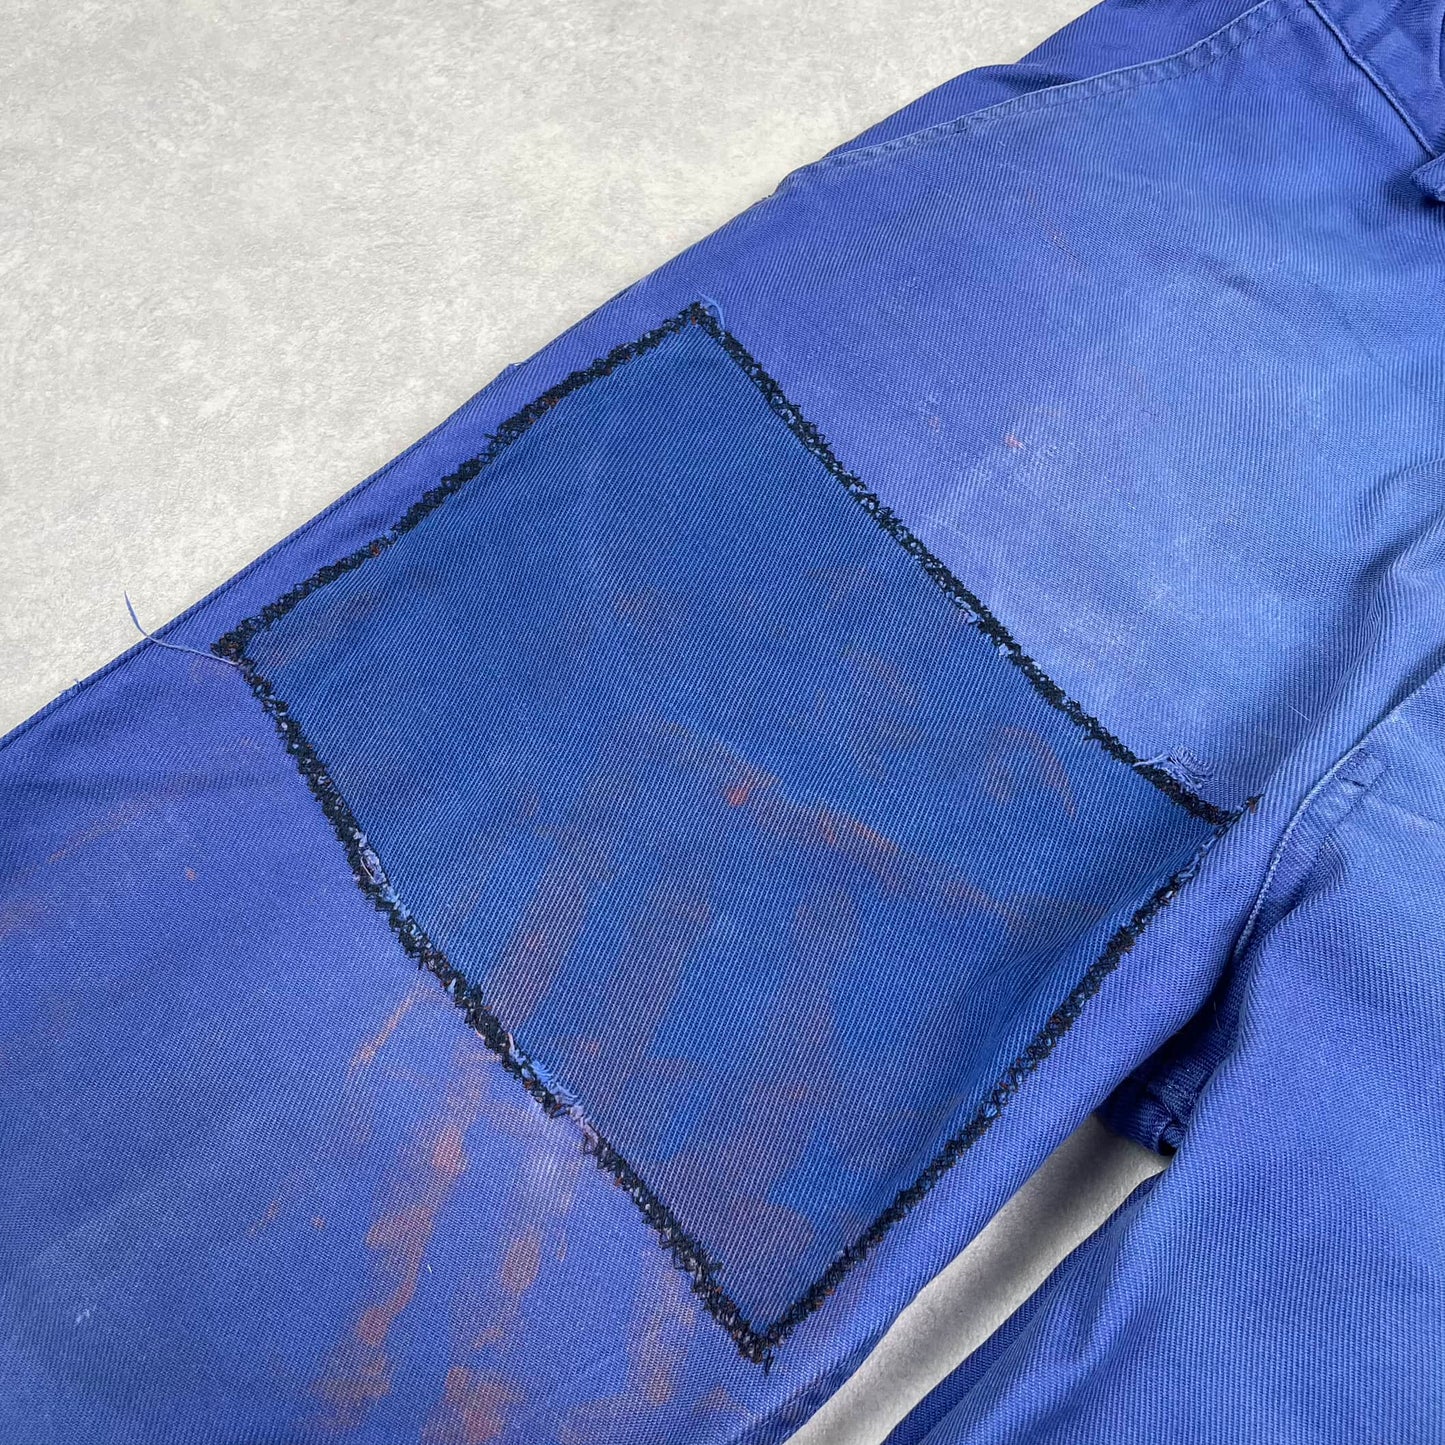 Vintage Bleu de Travail Pants #3